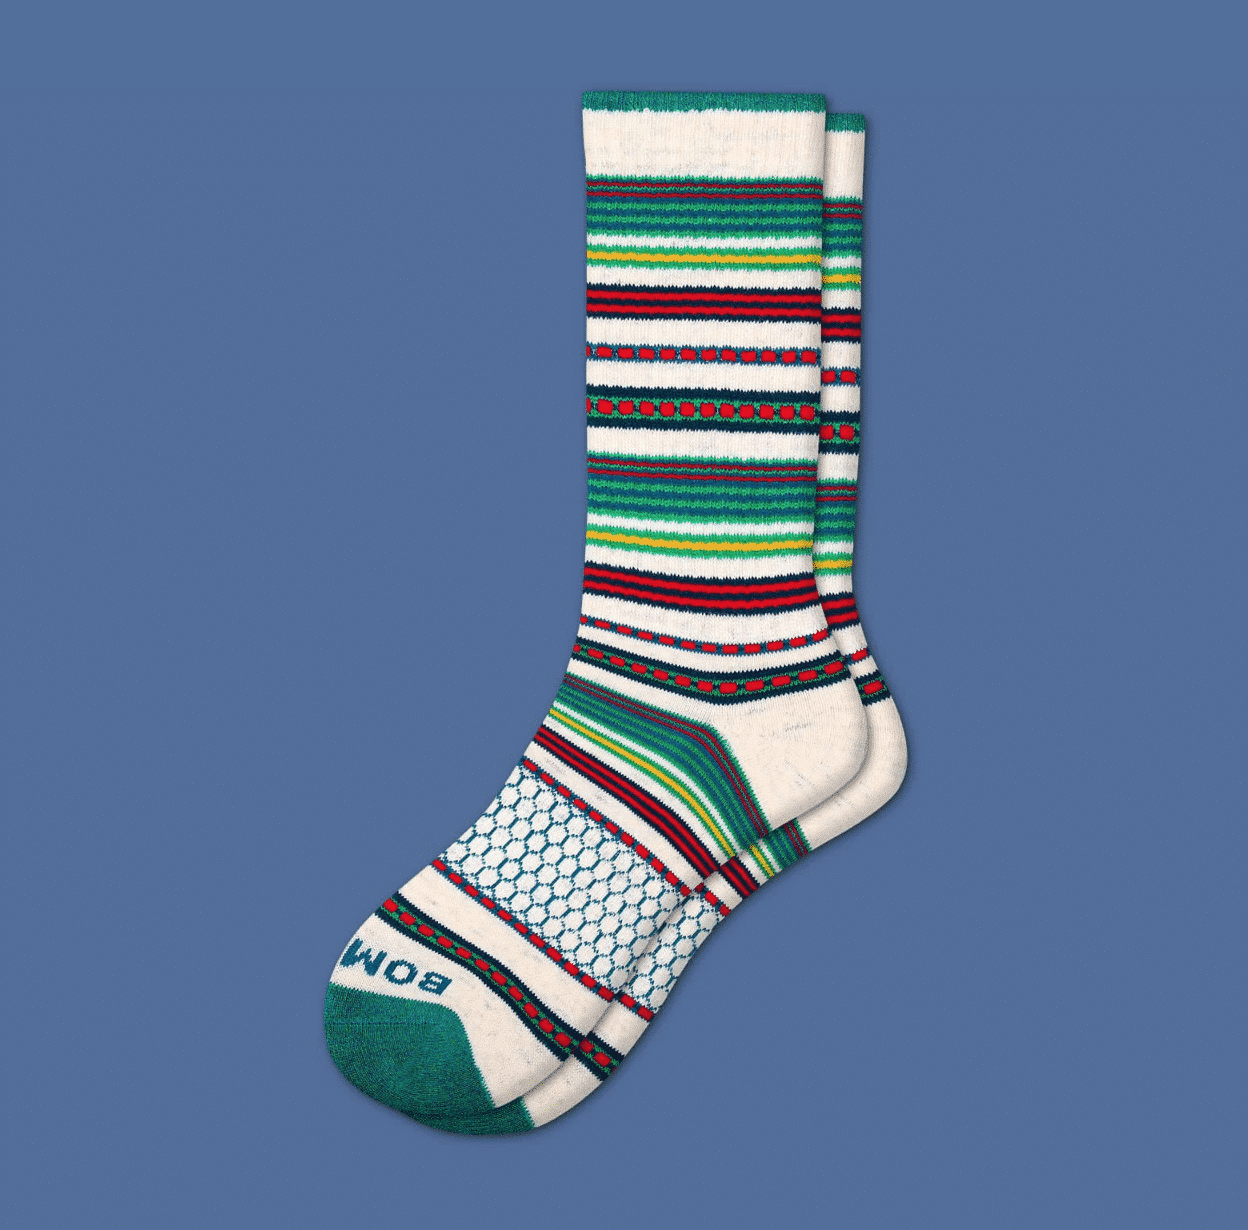 Men's Fair Isle calf socks